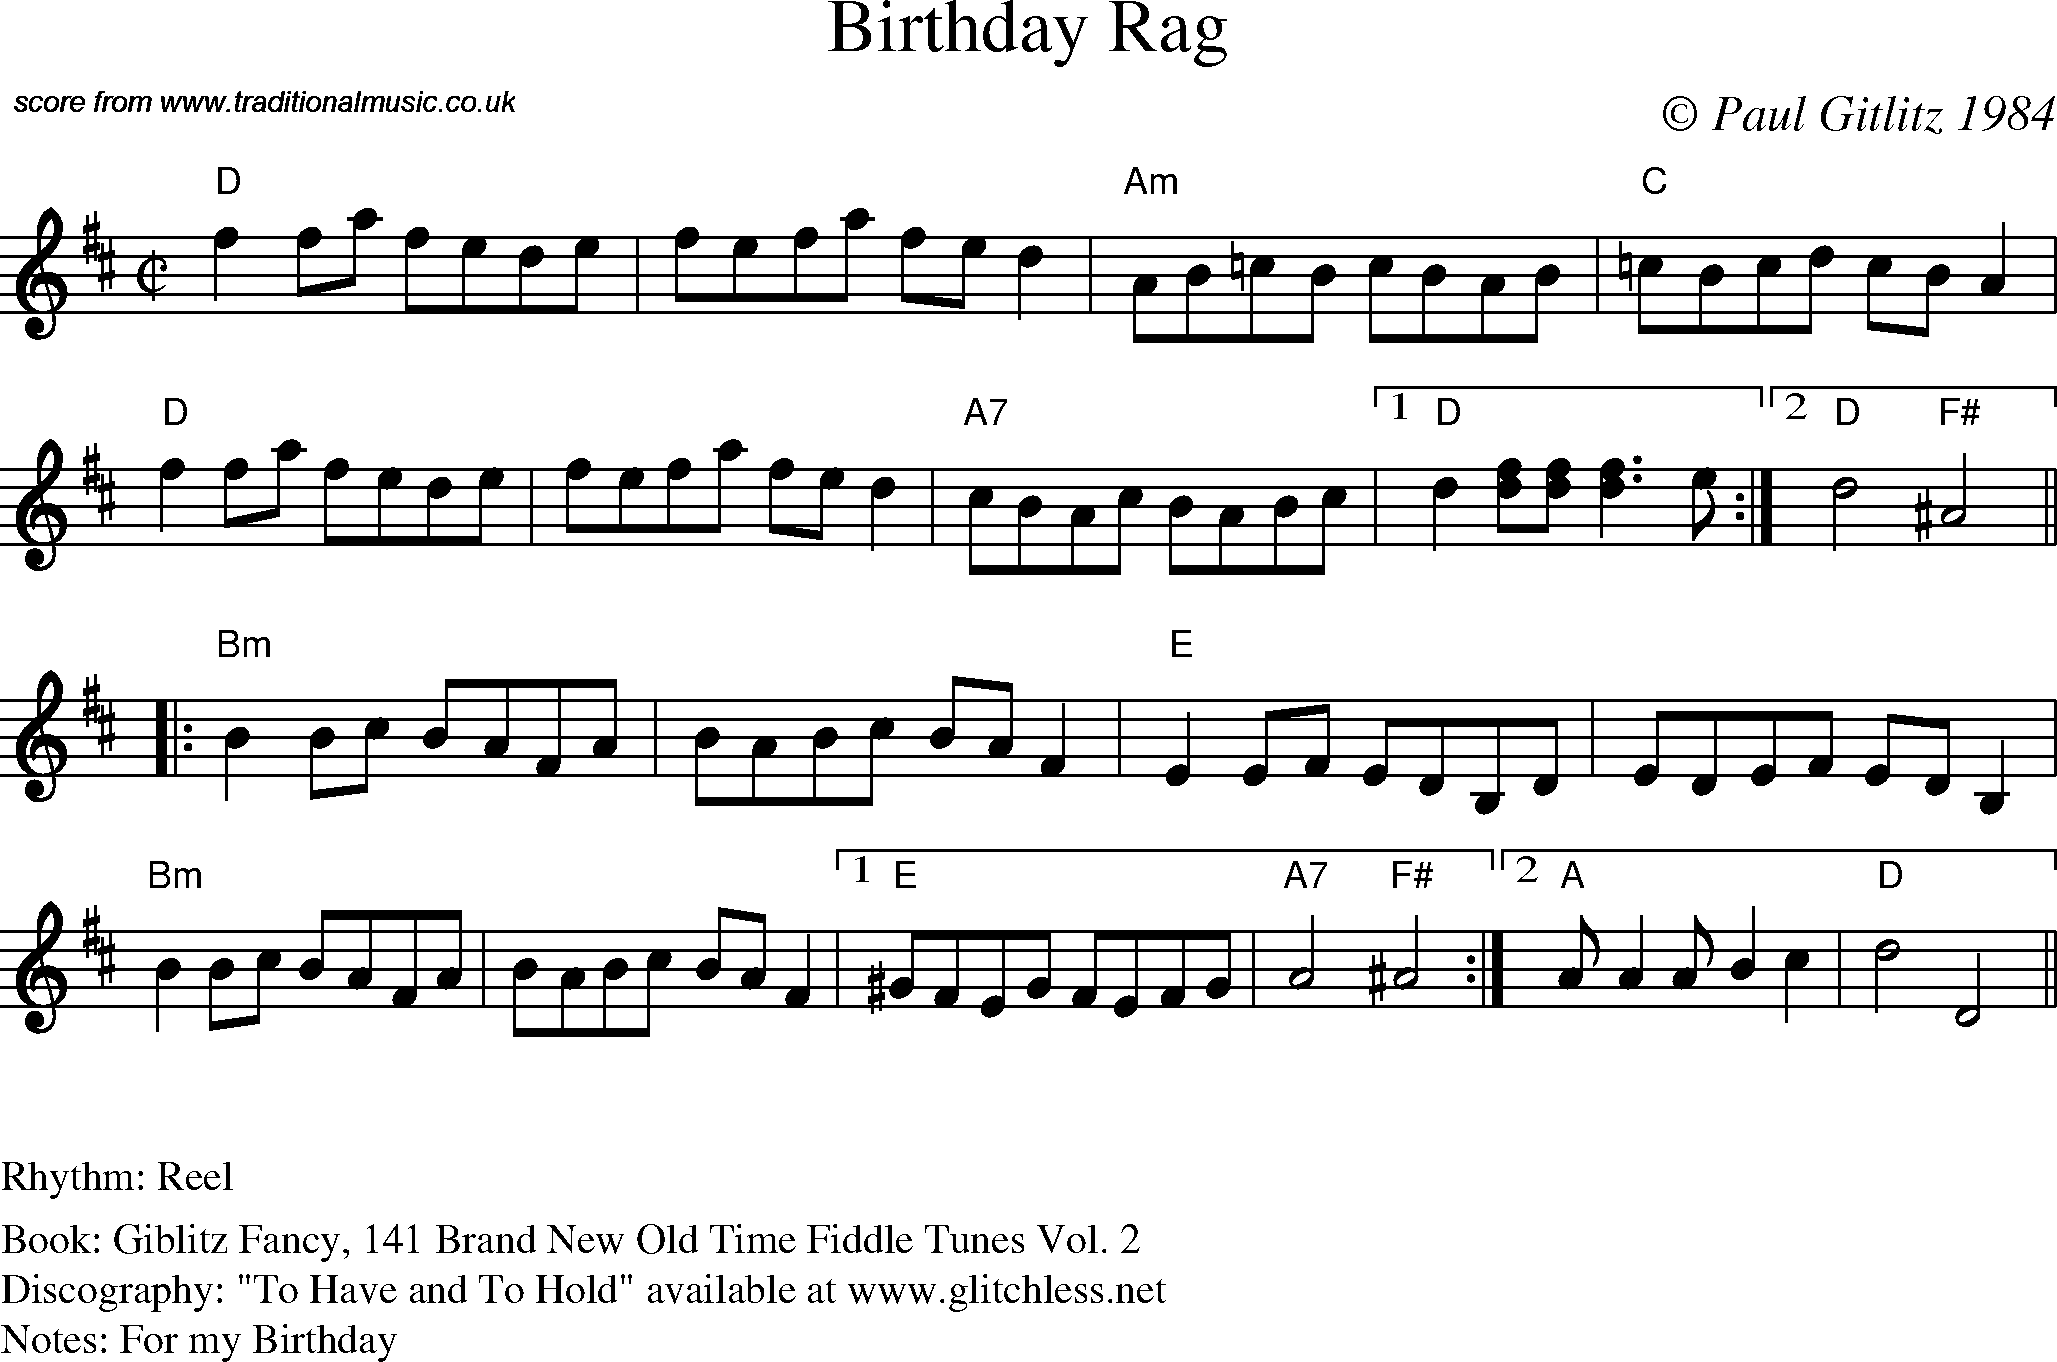 Sheet Music Score for Reel - Birthday Rag